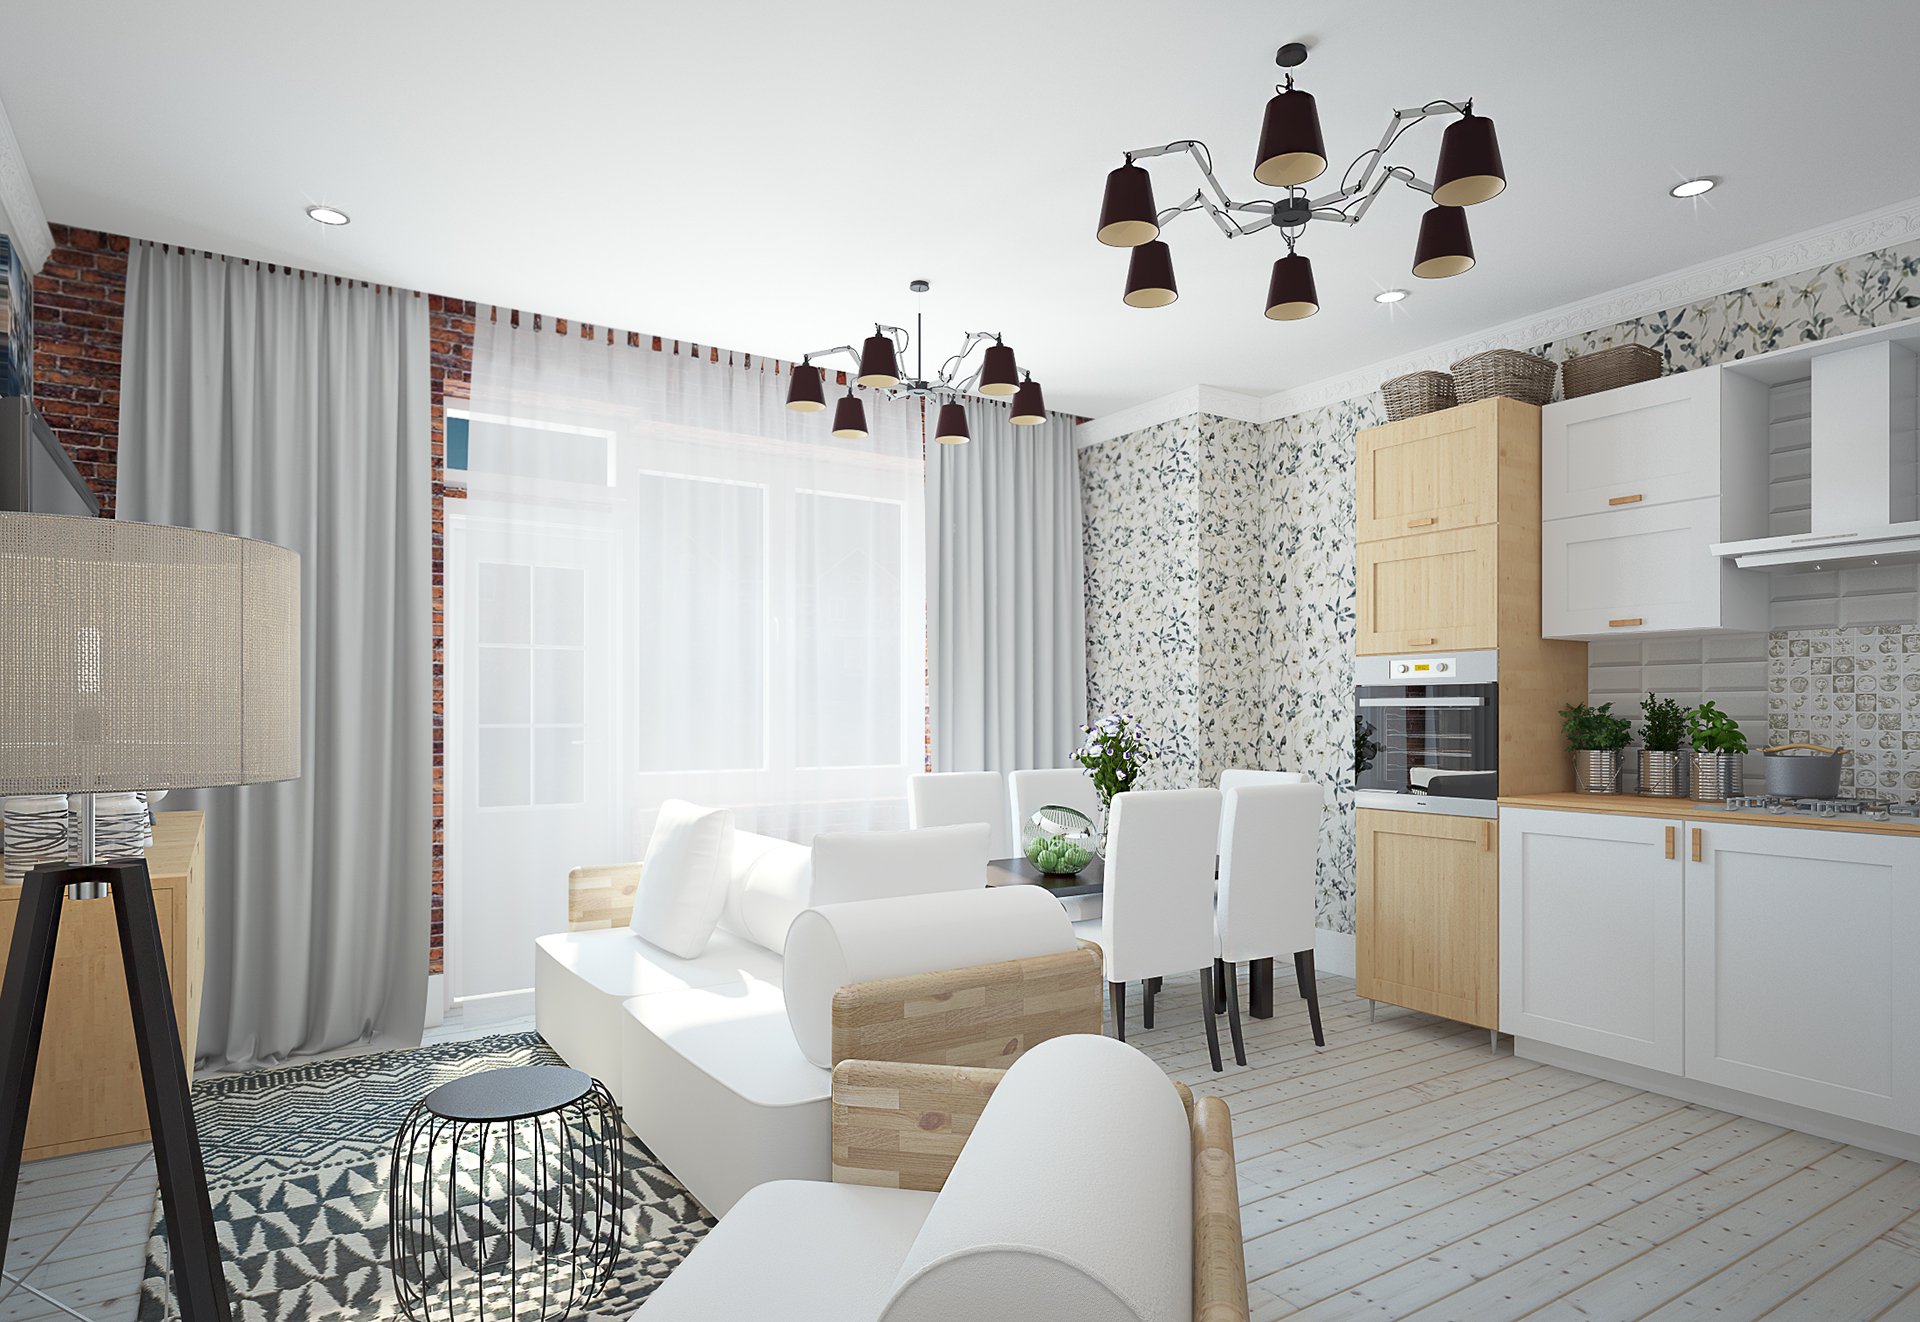 Кухня в скандинавском стиле - белый кухонный гарнитур в интерьере кухни гостиной, кухня в стиле сканди.